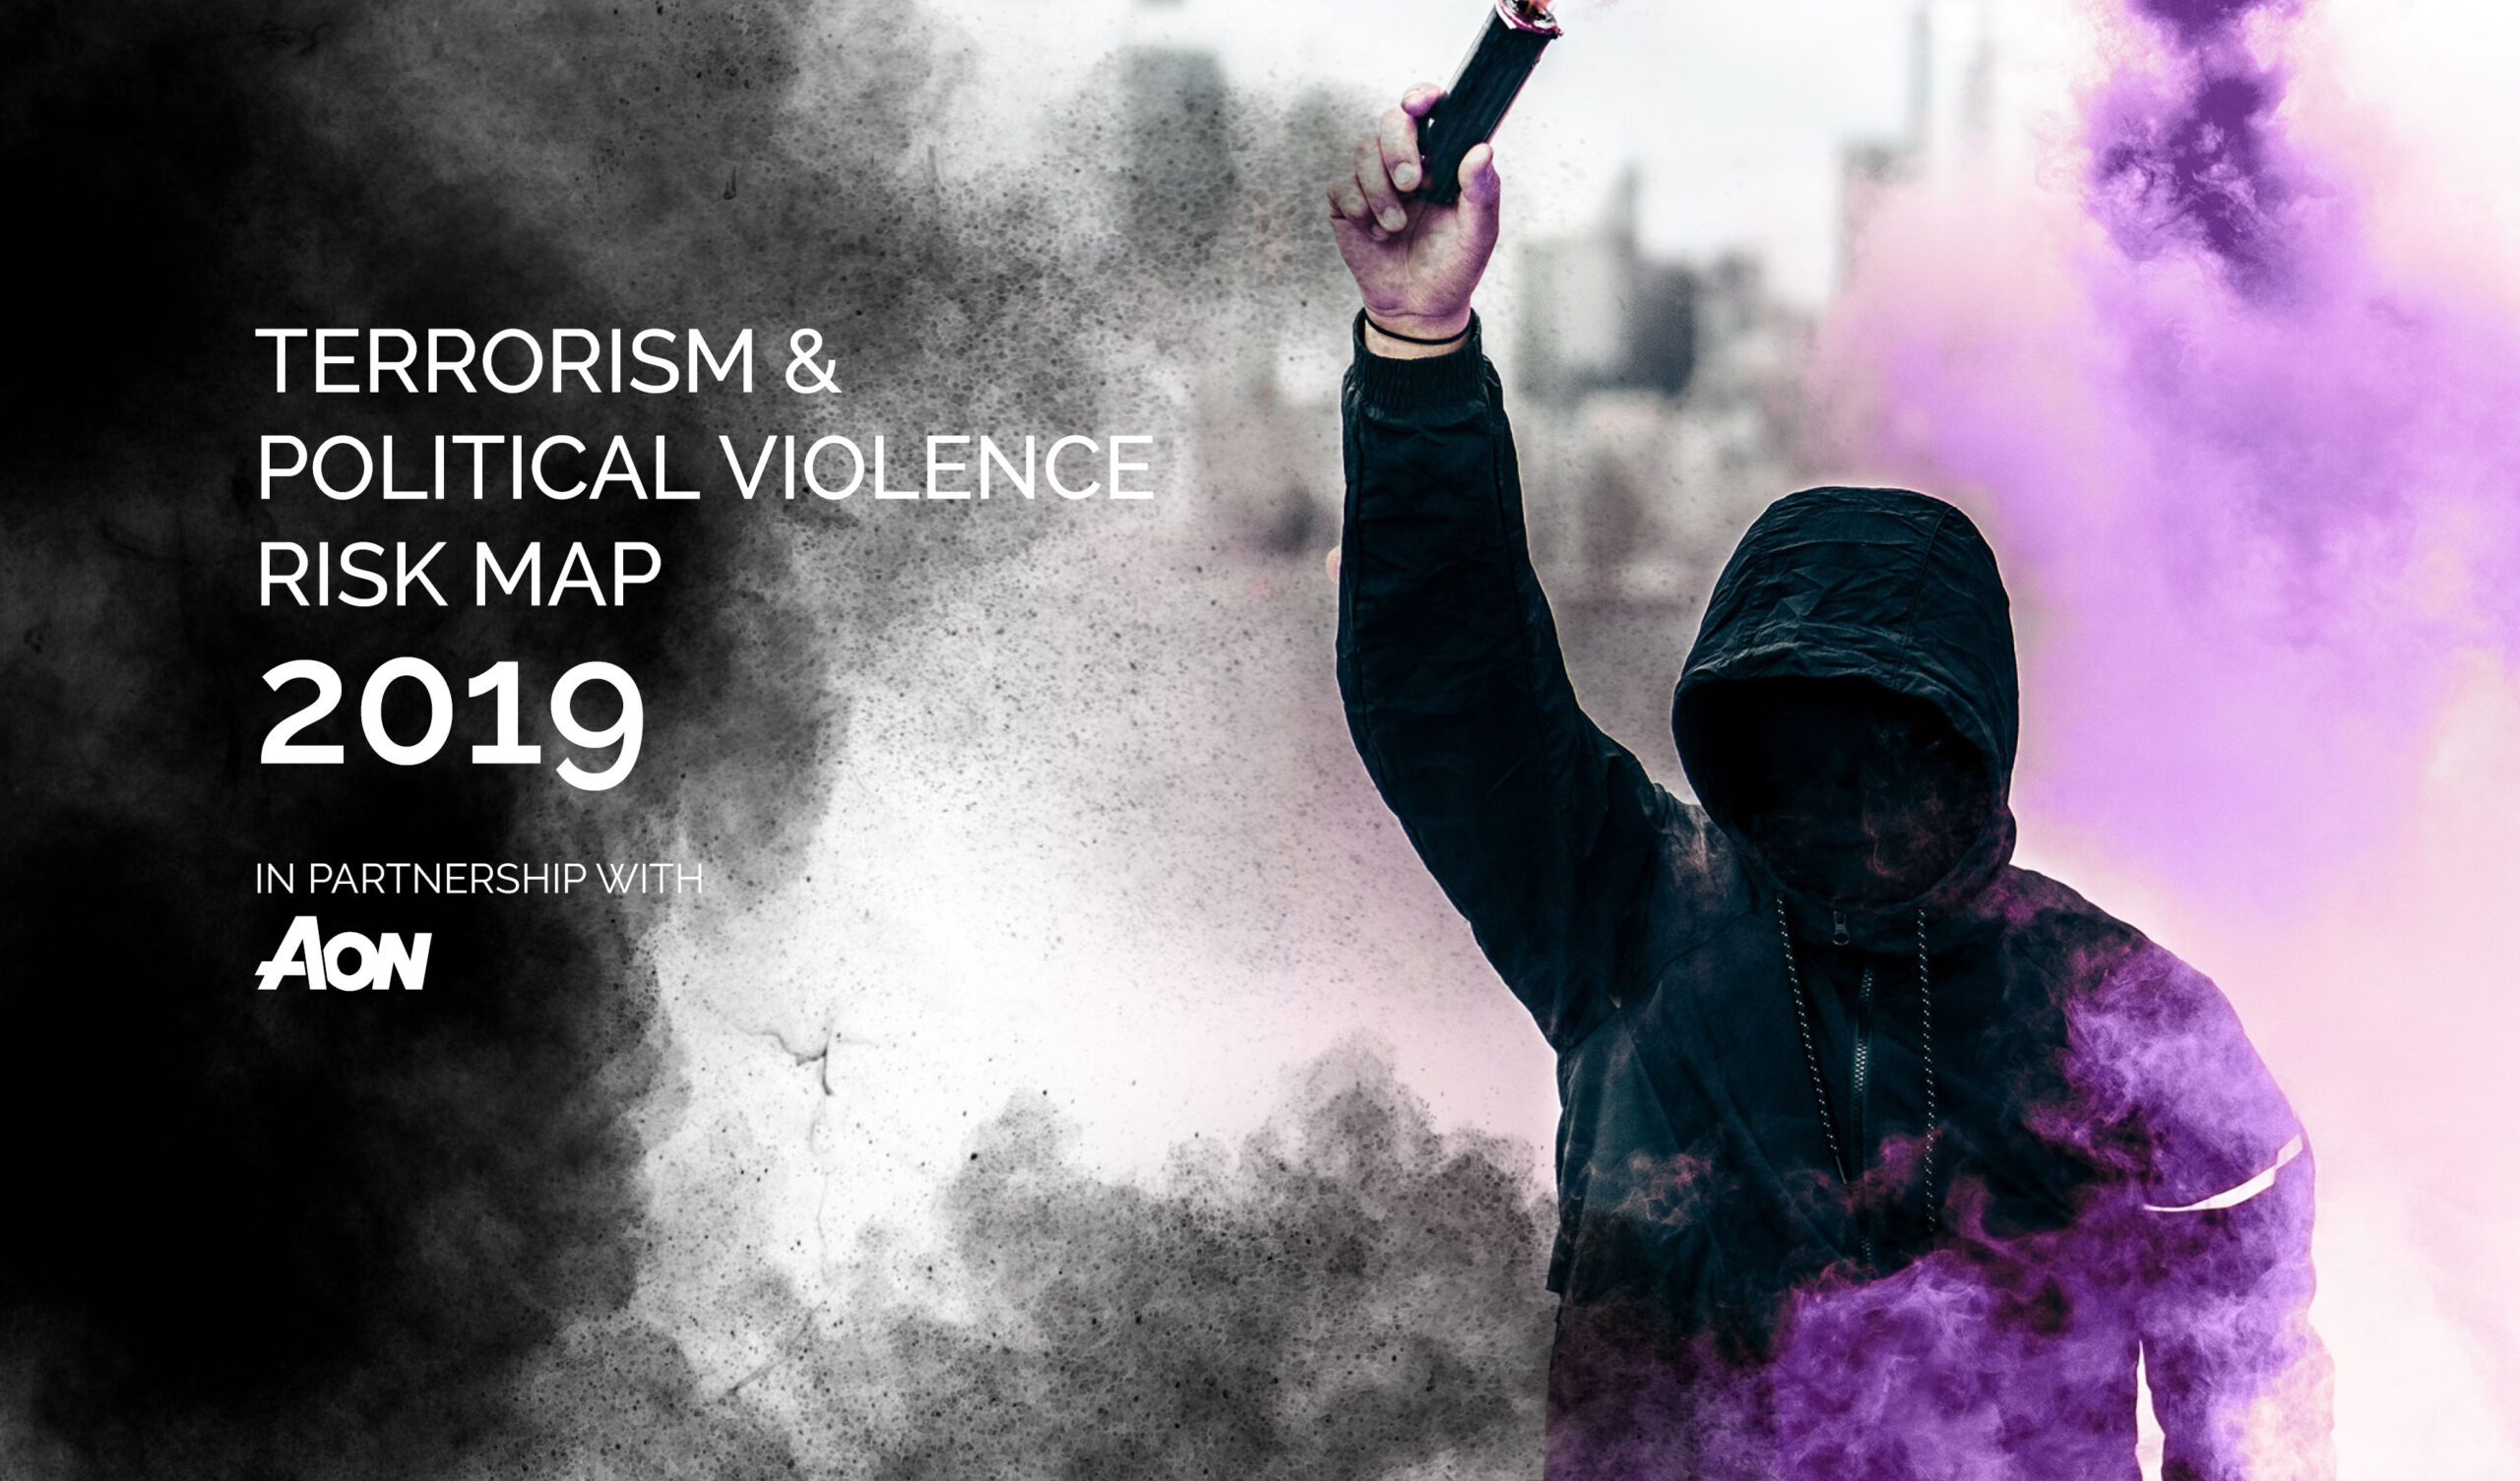 Terrorism & Political Violence Risk Map 2019